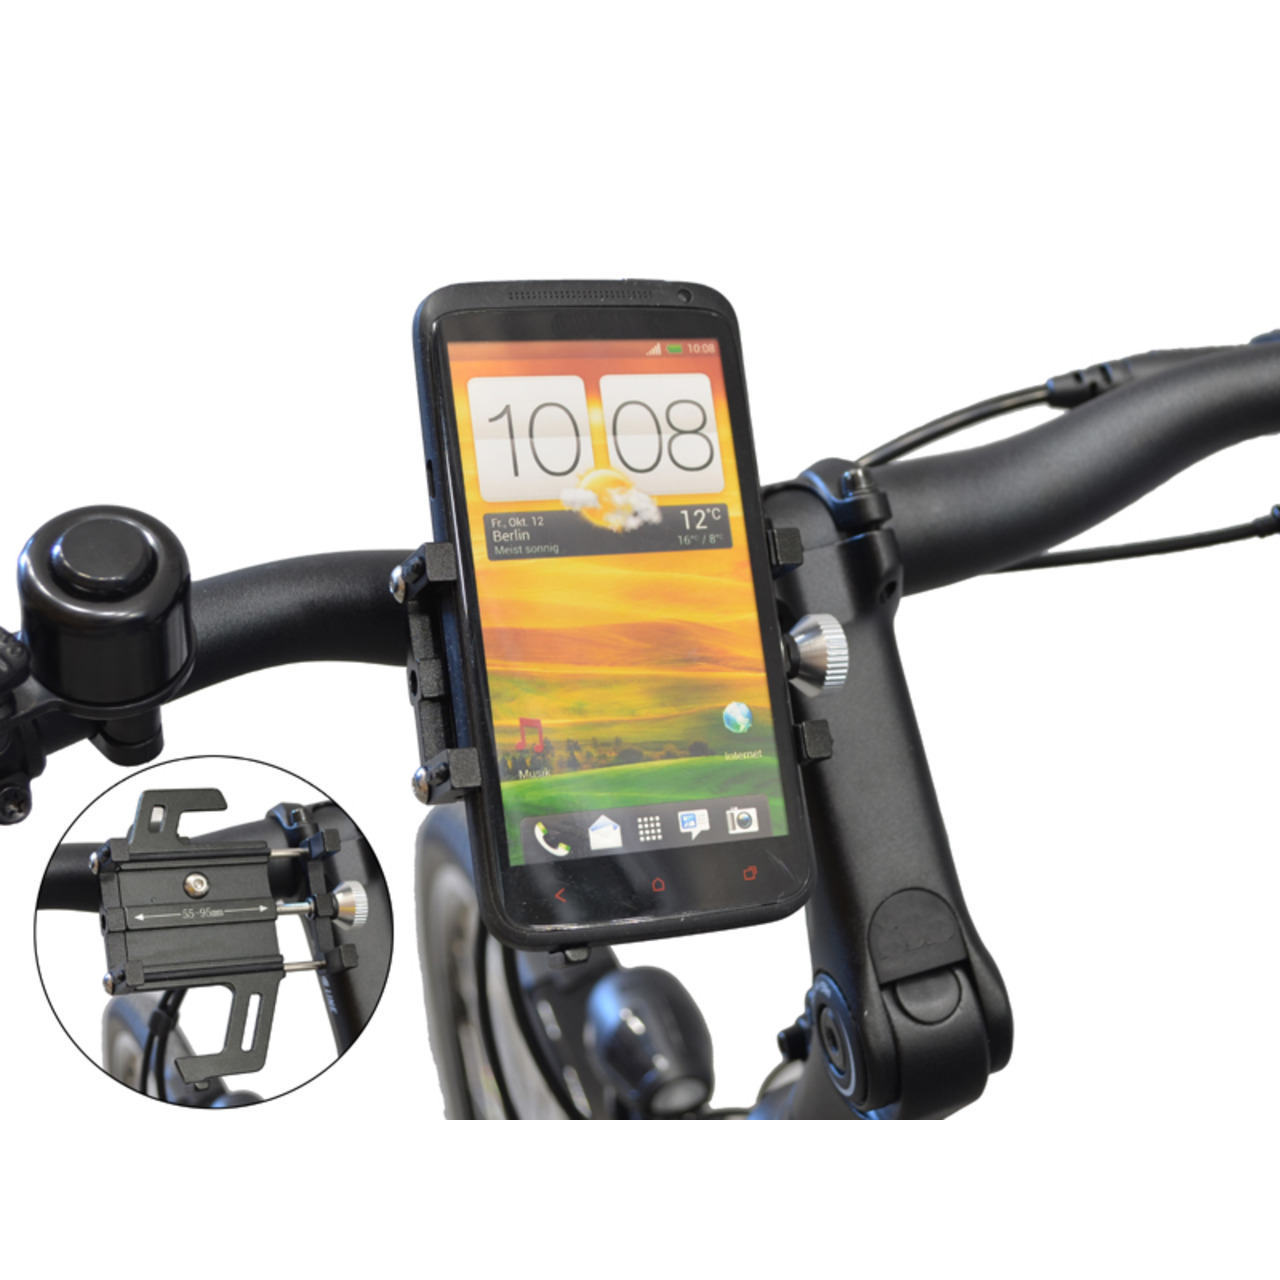 Filmer Fahrrad-Smartphonehalterung 49800- 55 - 95 mm Smartphone-Breite- mit Stossdmpfung- Aluminium unter Freizeit- und Outdoortechnik